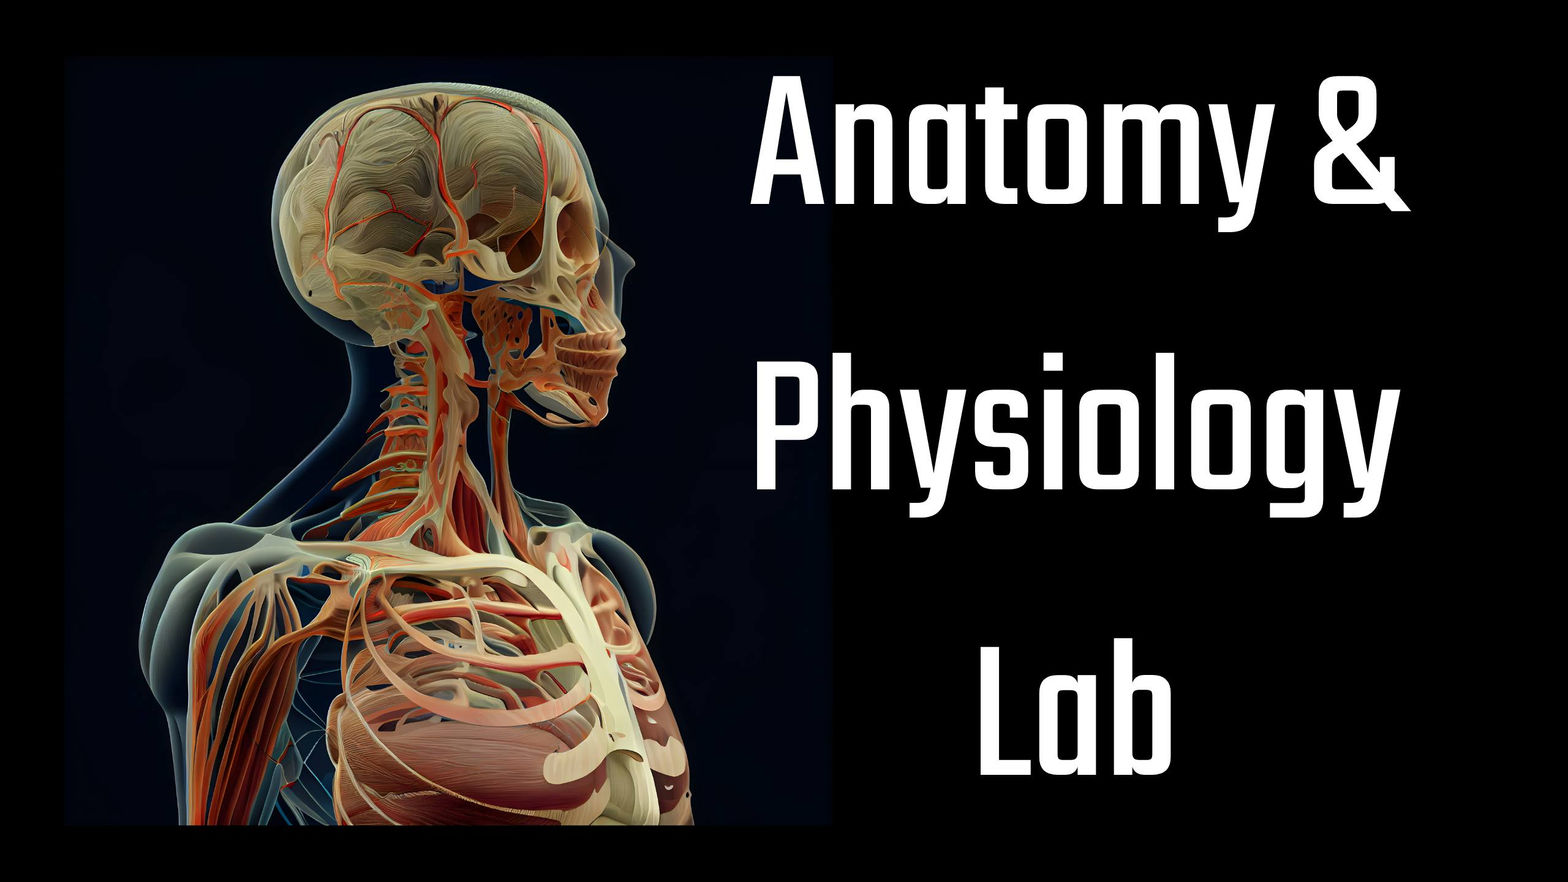 Anatomy & Physiology Lab